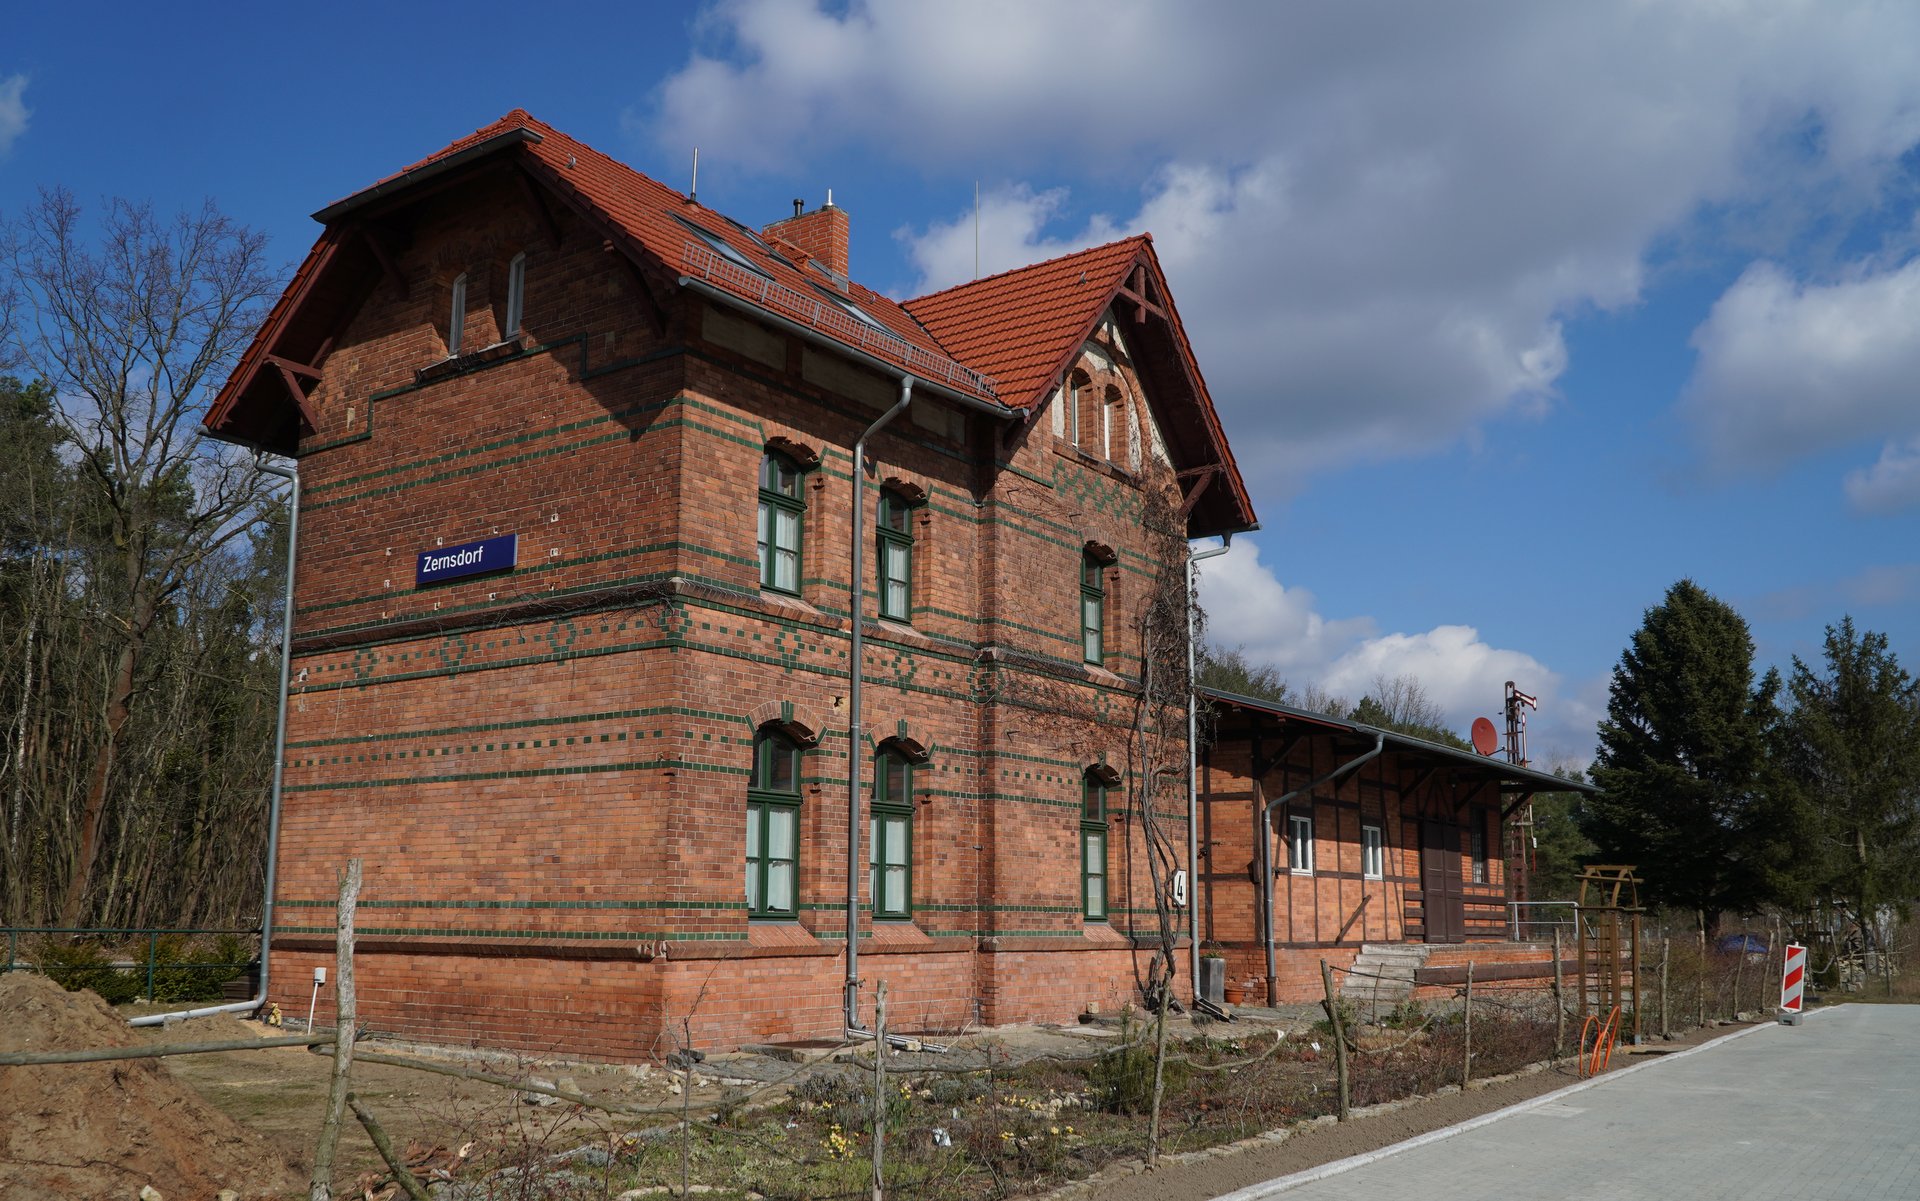 Bahnhof Zernsdorf